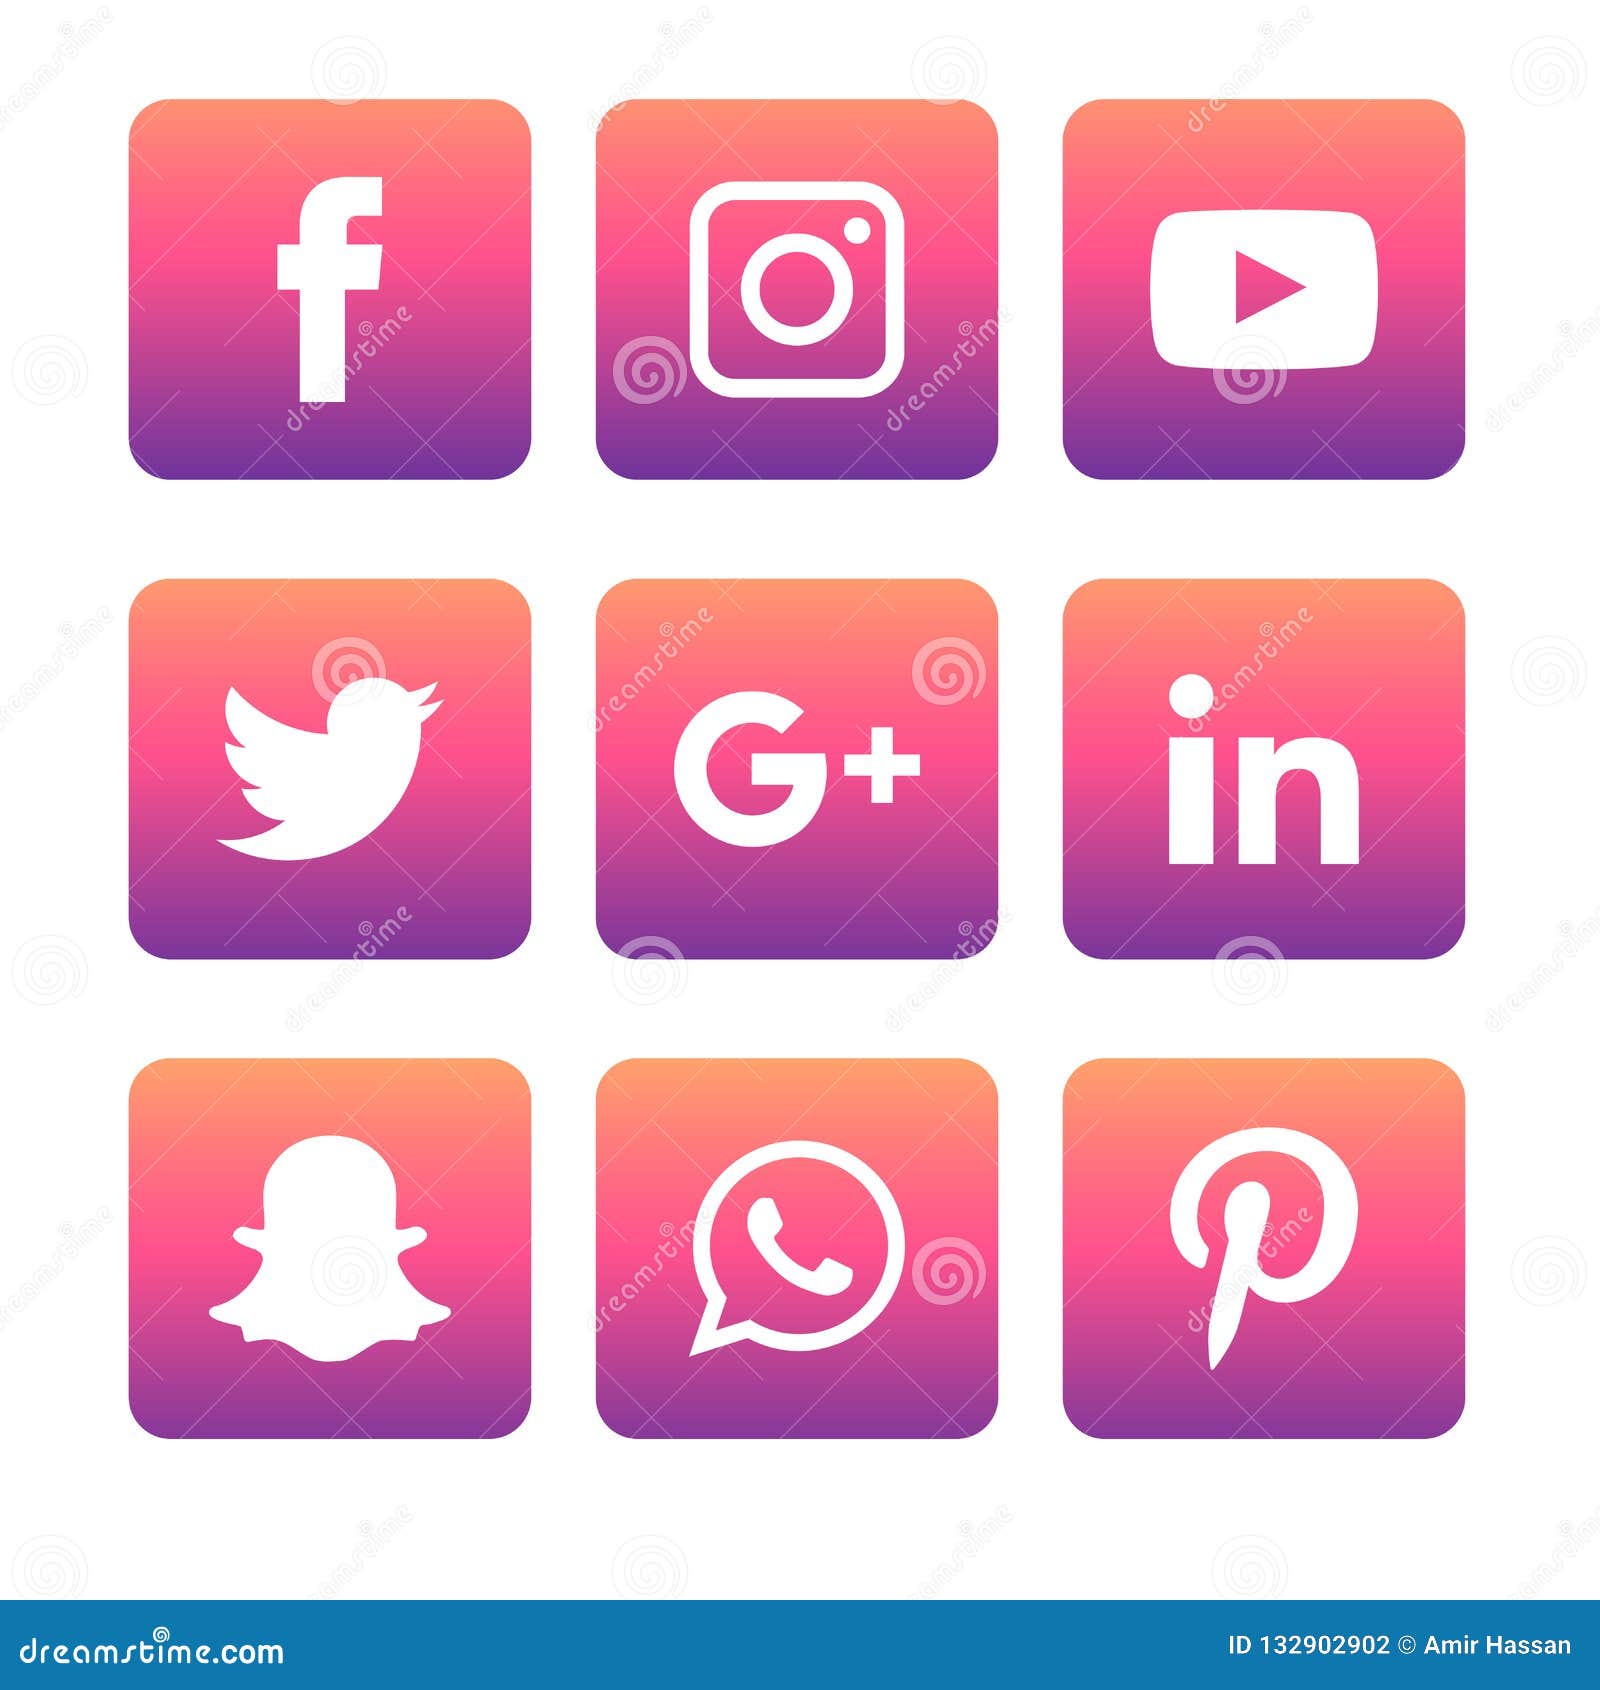 Social Media Icons Set Logo Vector Illustrator Editorial ...